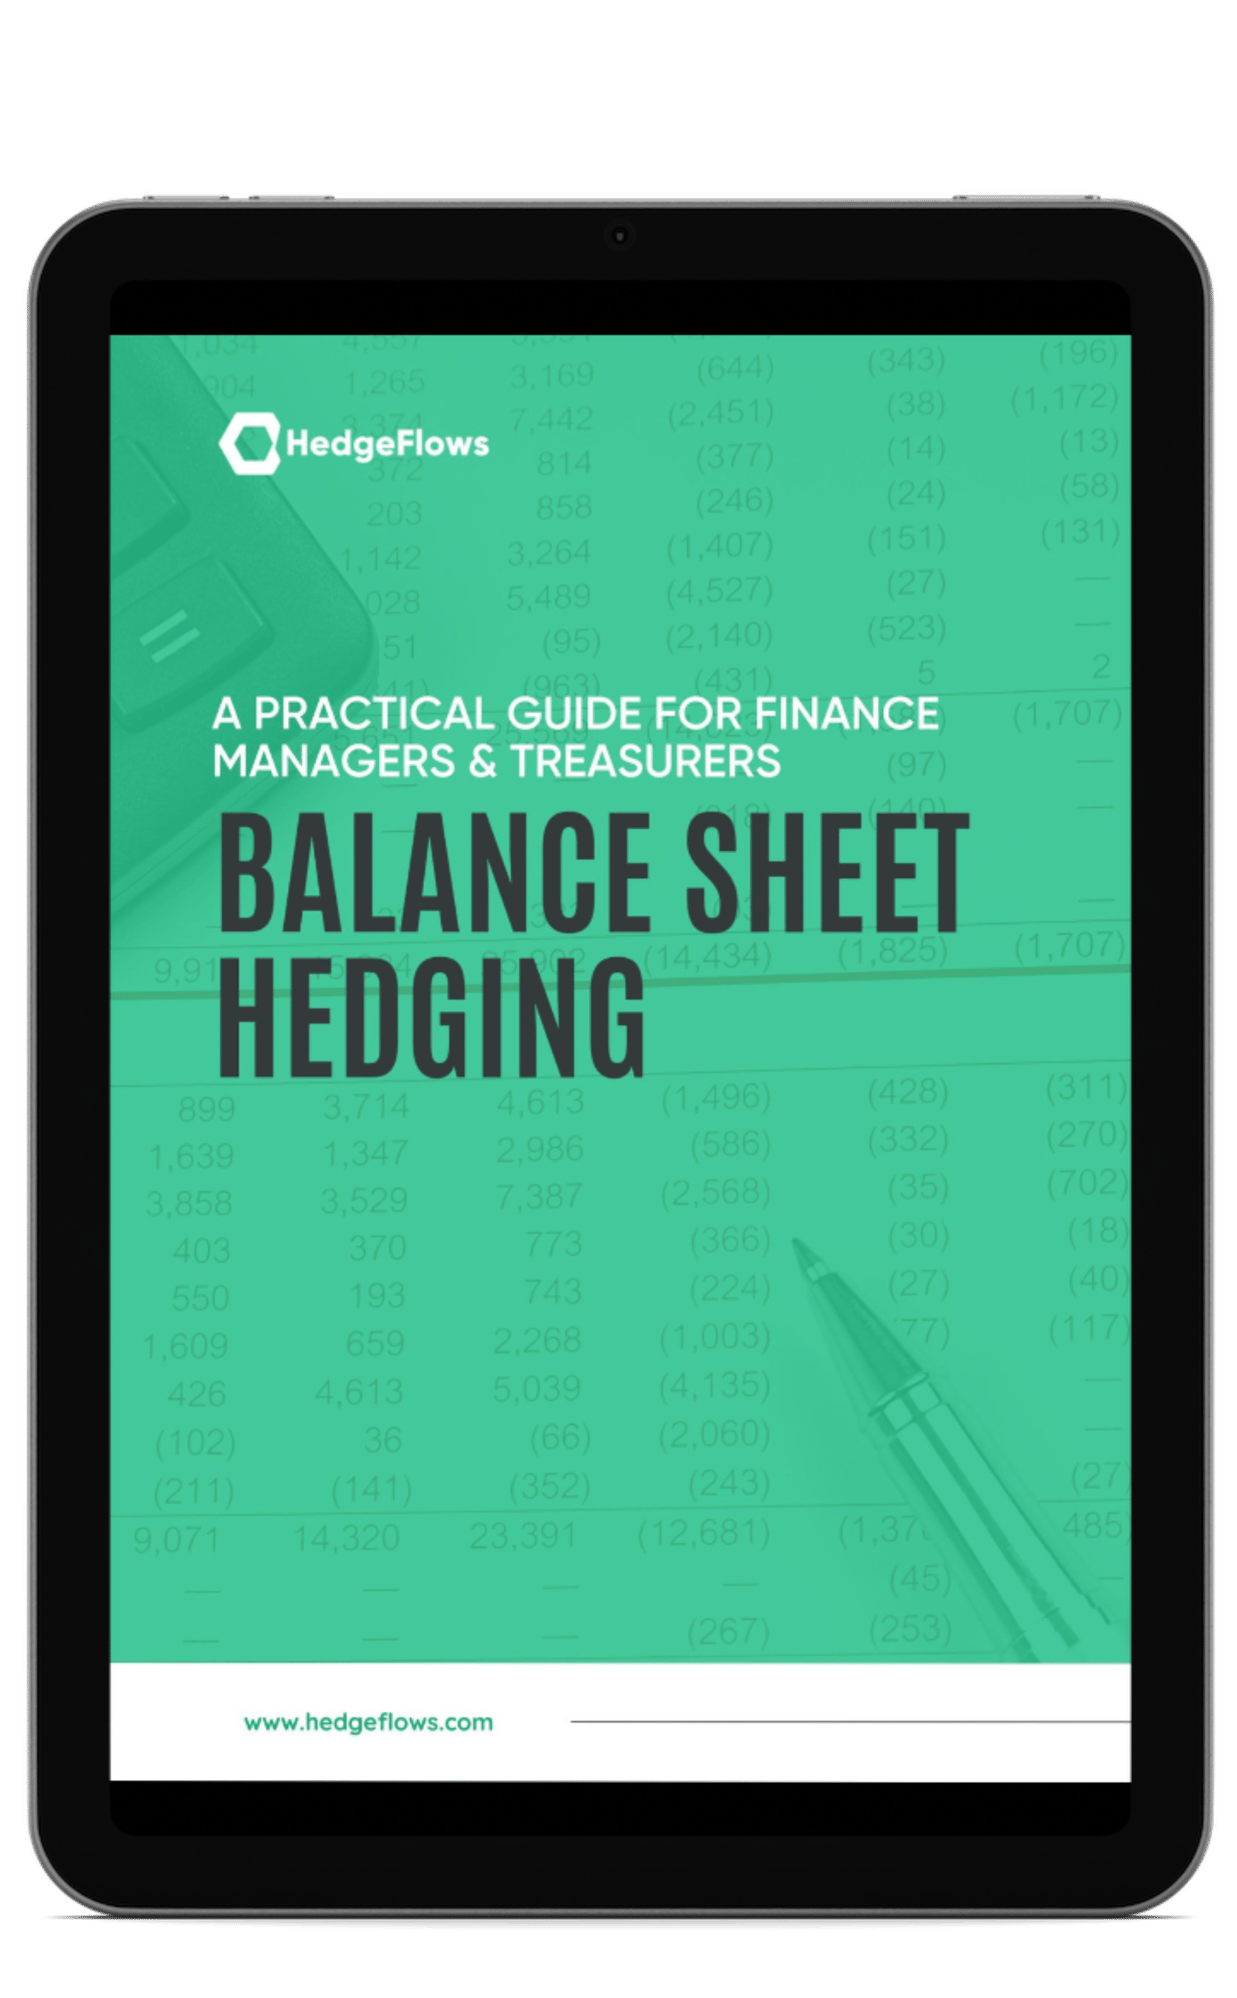 Balance sheet hedging